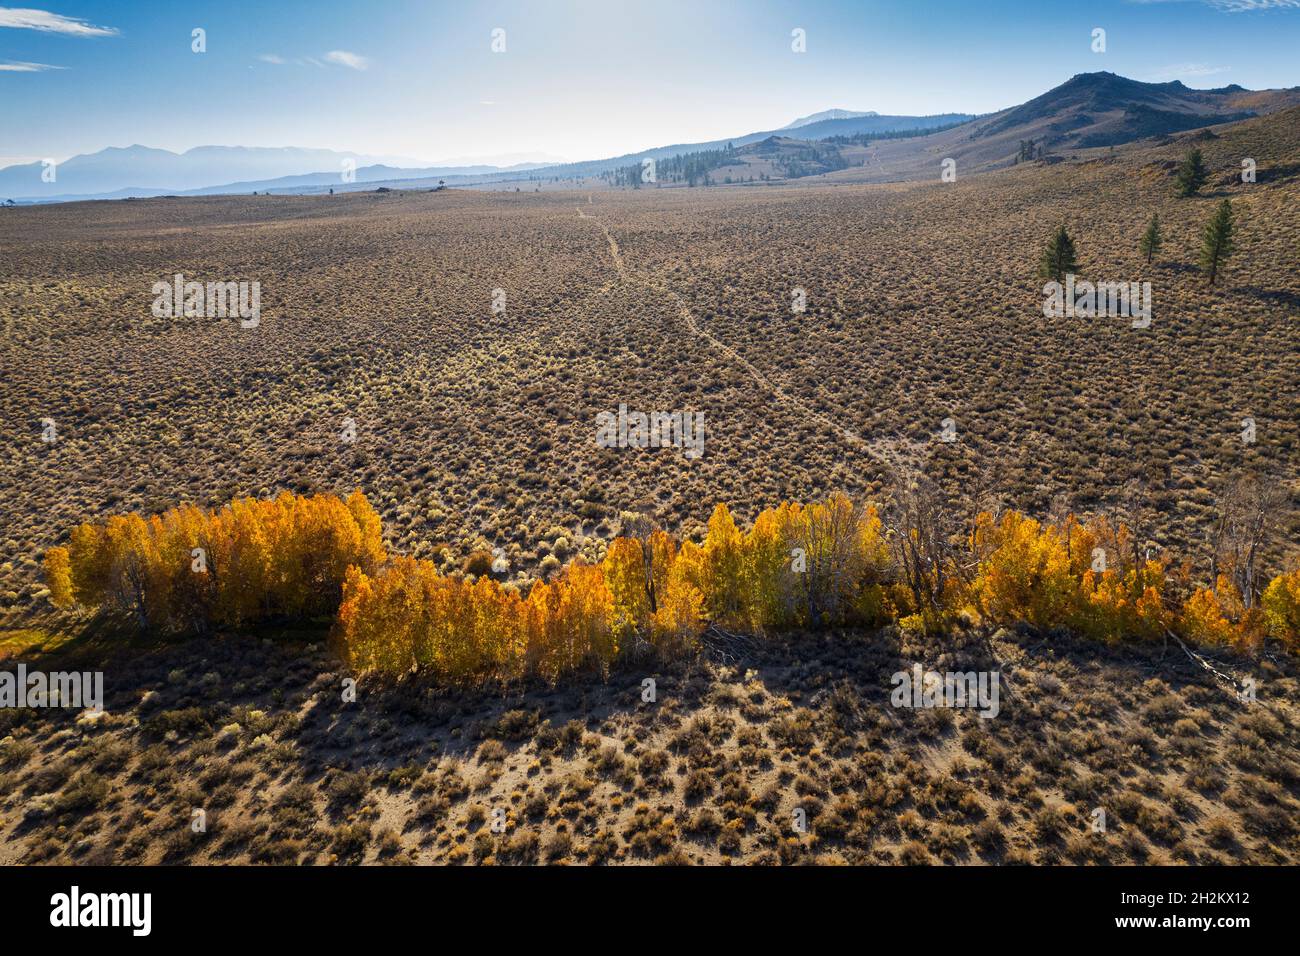 Vista aérea de los colores de otoño protegidos en barrancos del desierto cerca del lago Mono. Foto de stock